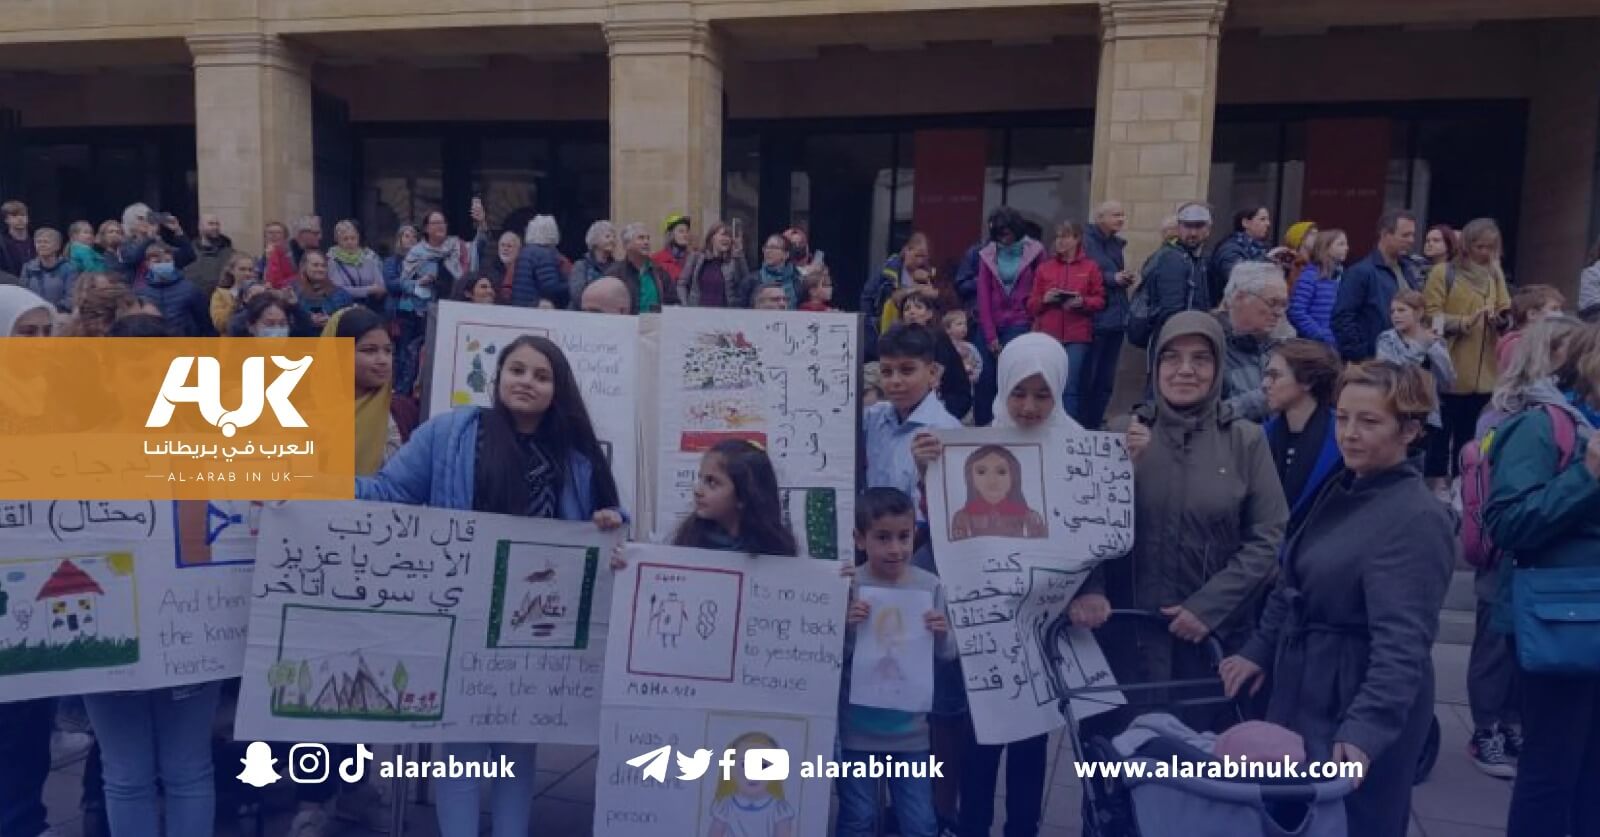 جمعية الأخوات السوريات في أكسفورد